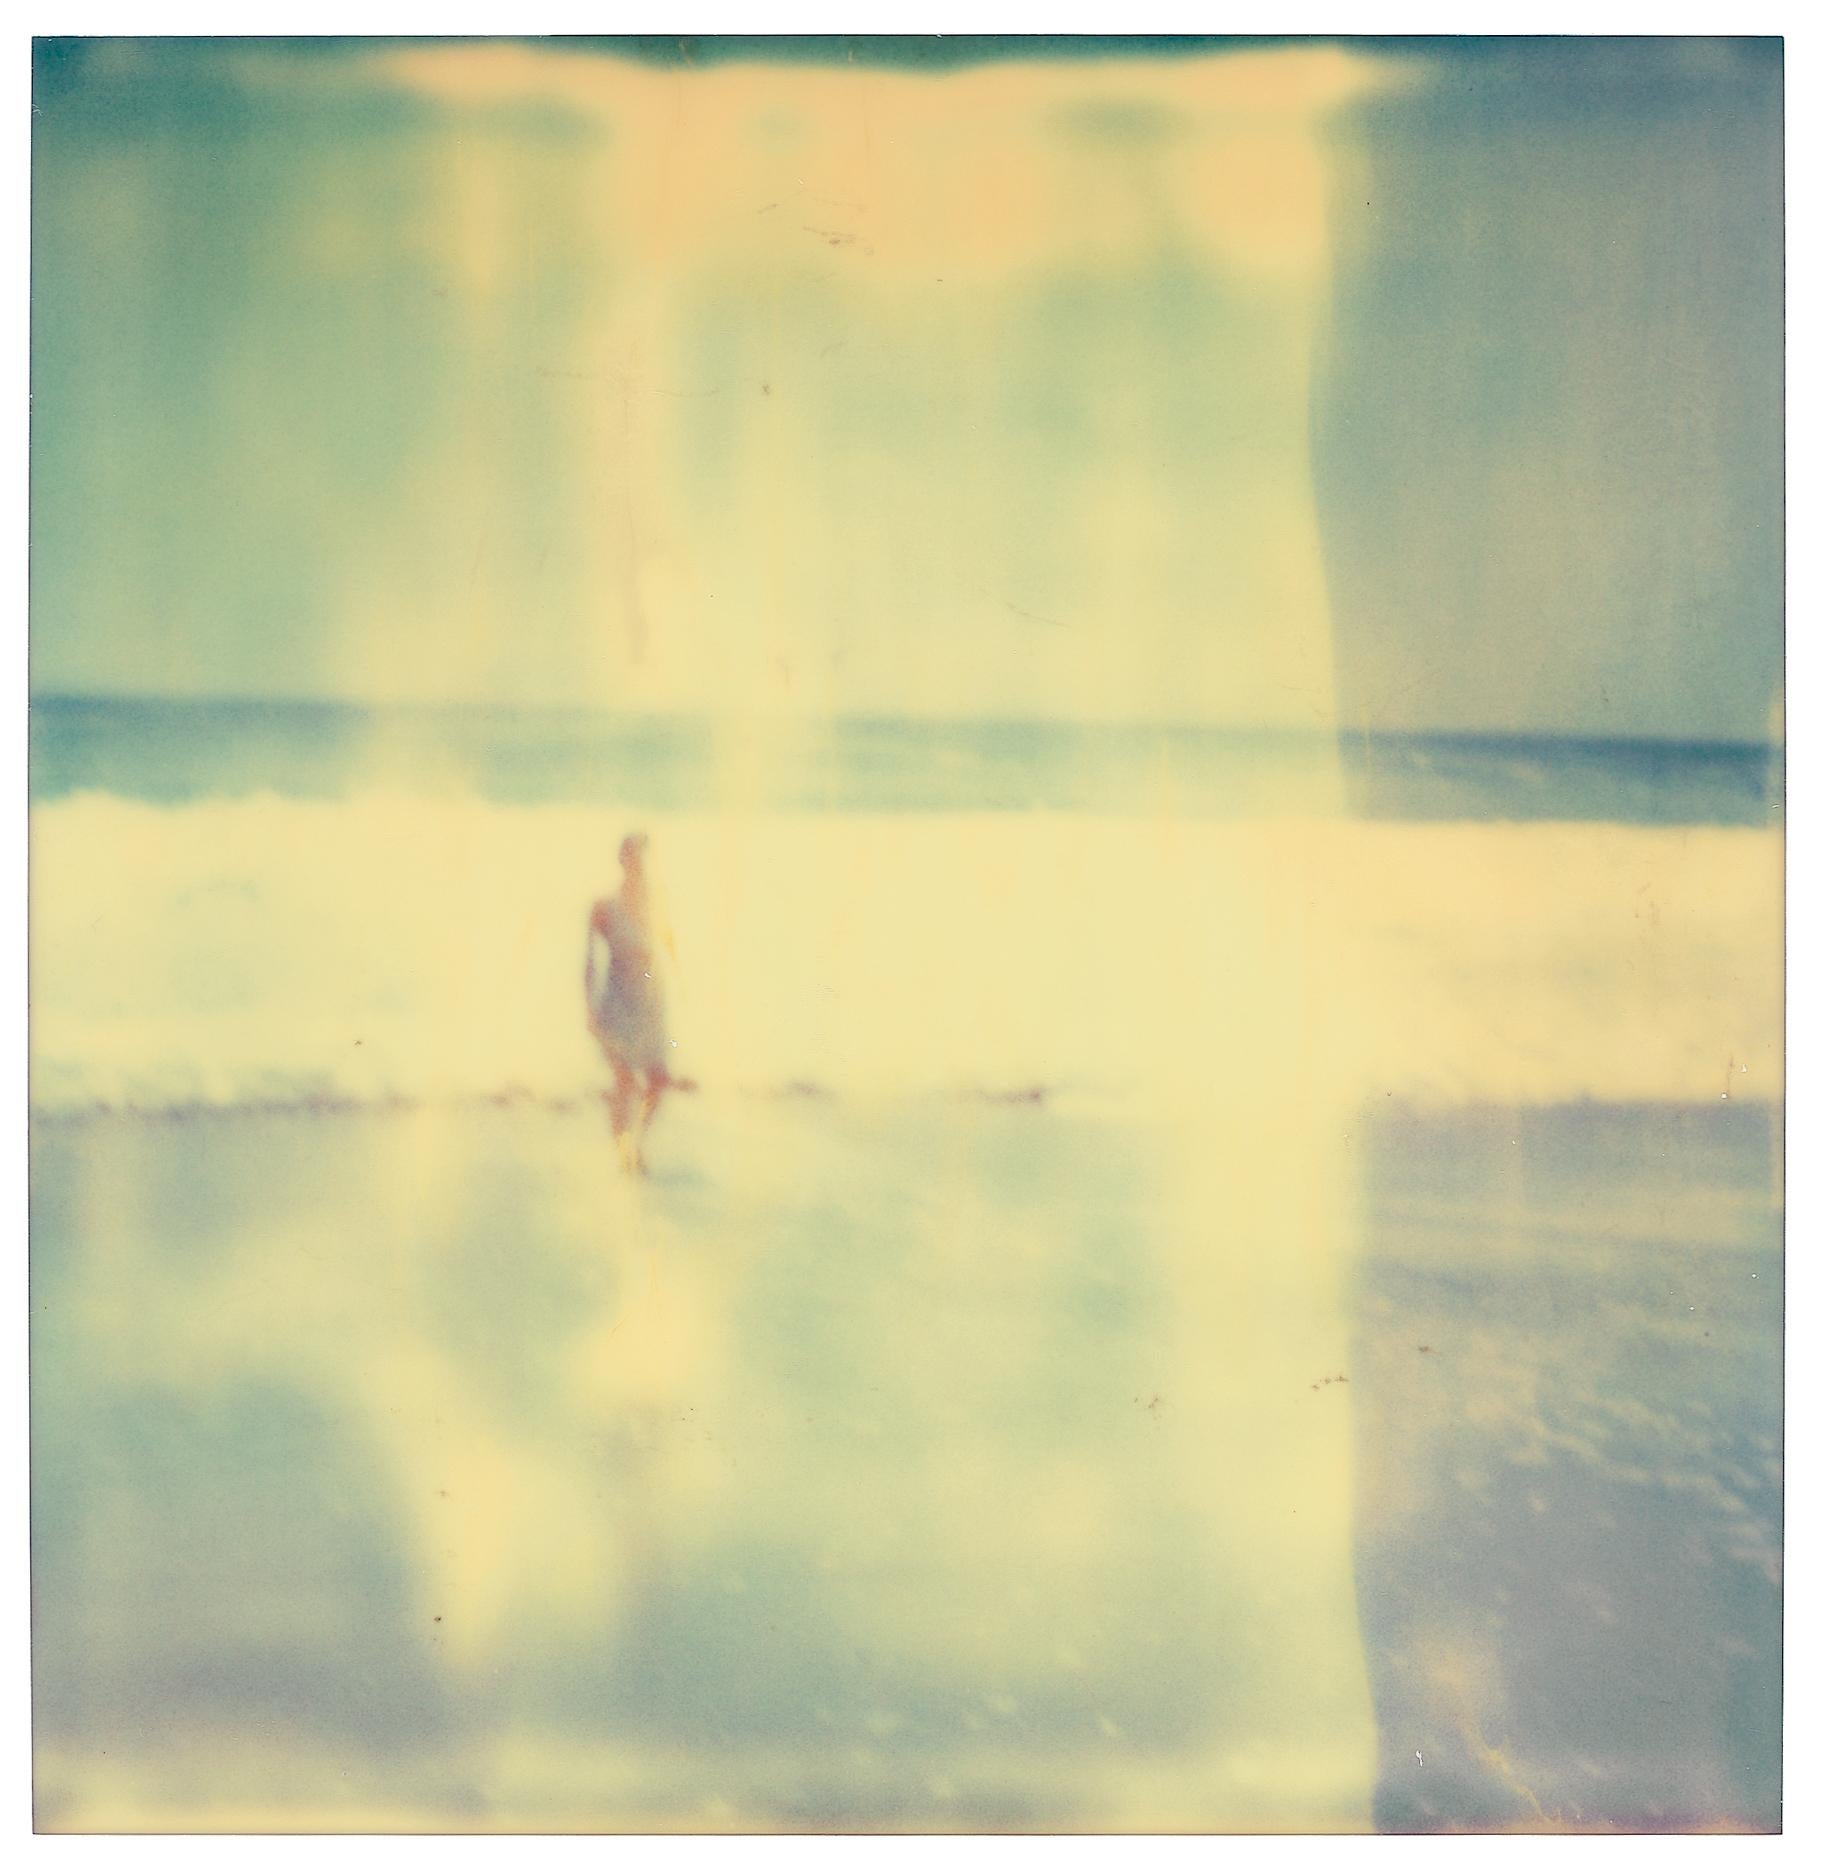 Frau in Malibu (Räger als das Paradies) – Polaroid, analog, 21. Jahrhundert, Frau (Zeitgenössisch), Photograph, von Stefanie Schneider